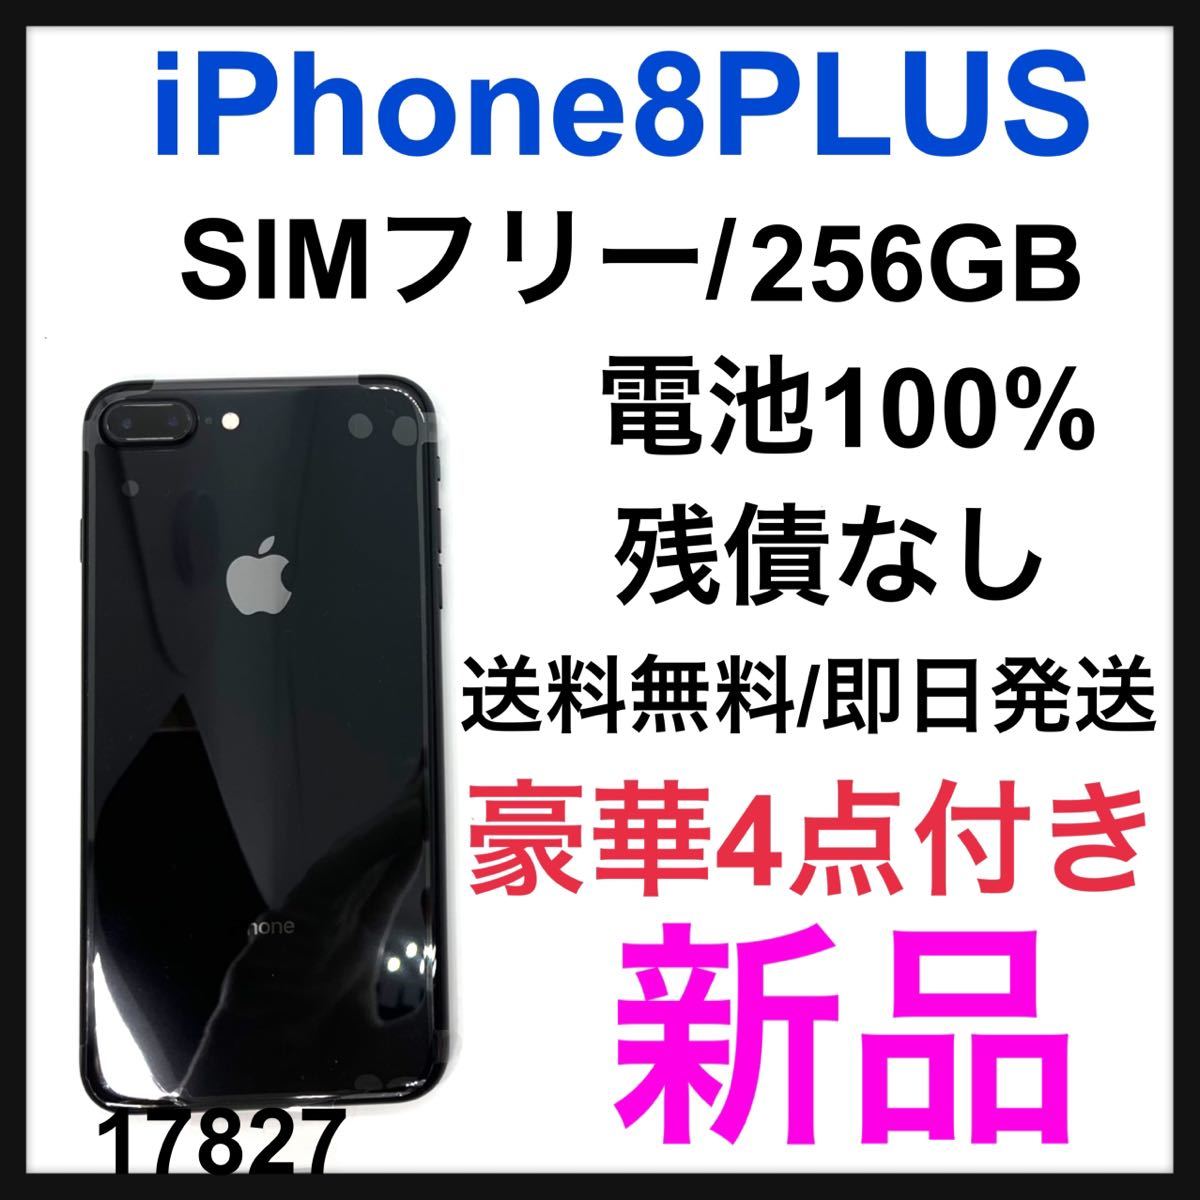 iPhone XR Blue 128 GB SIMフリー-